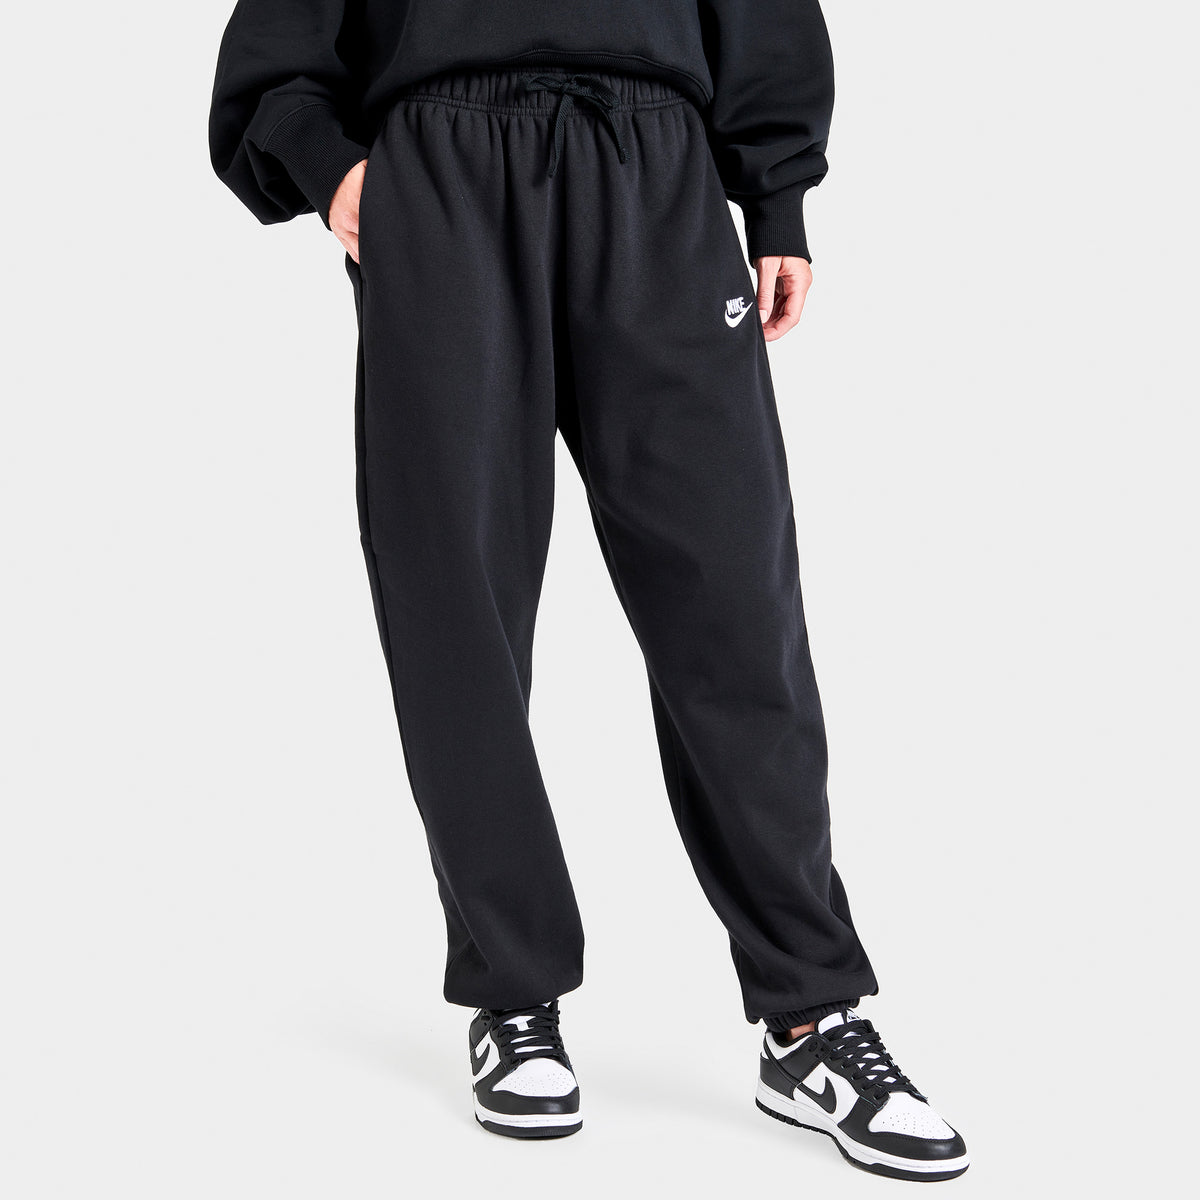 Nike Sportswear Phoenix Fleece Pants for women, black! Buy online